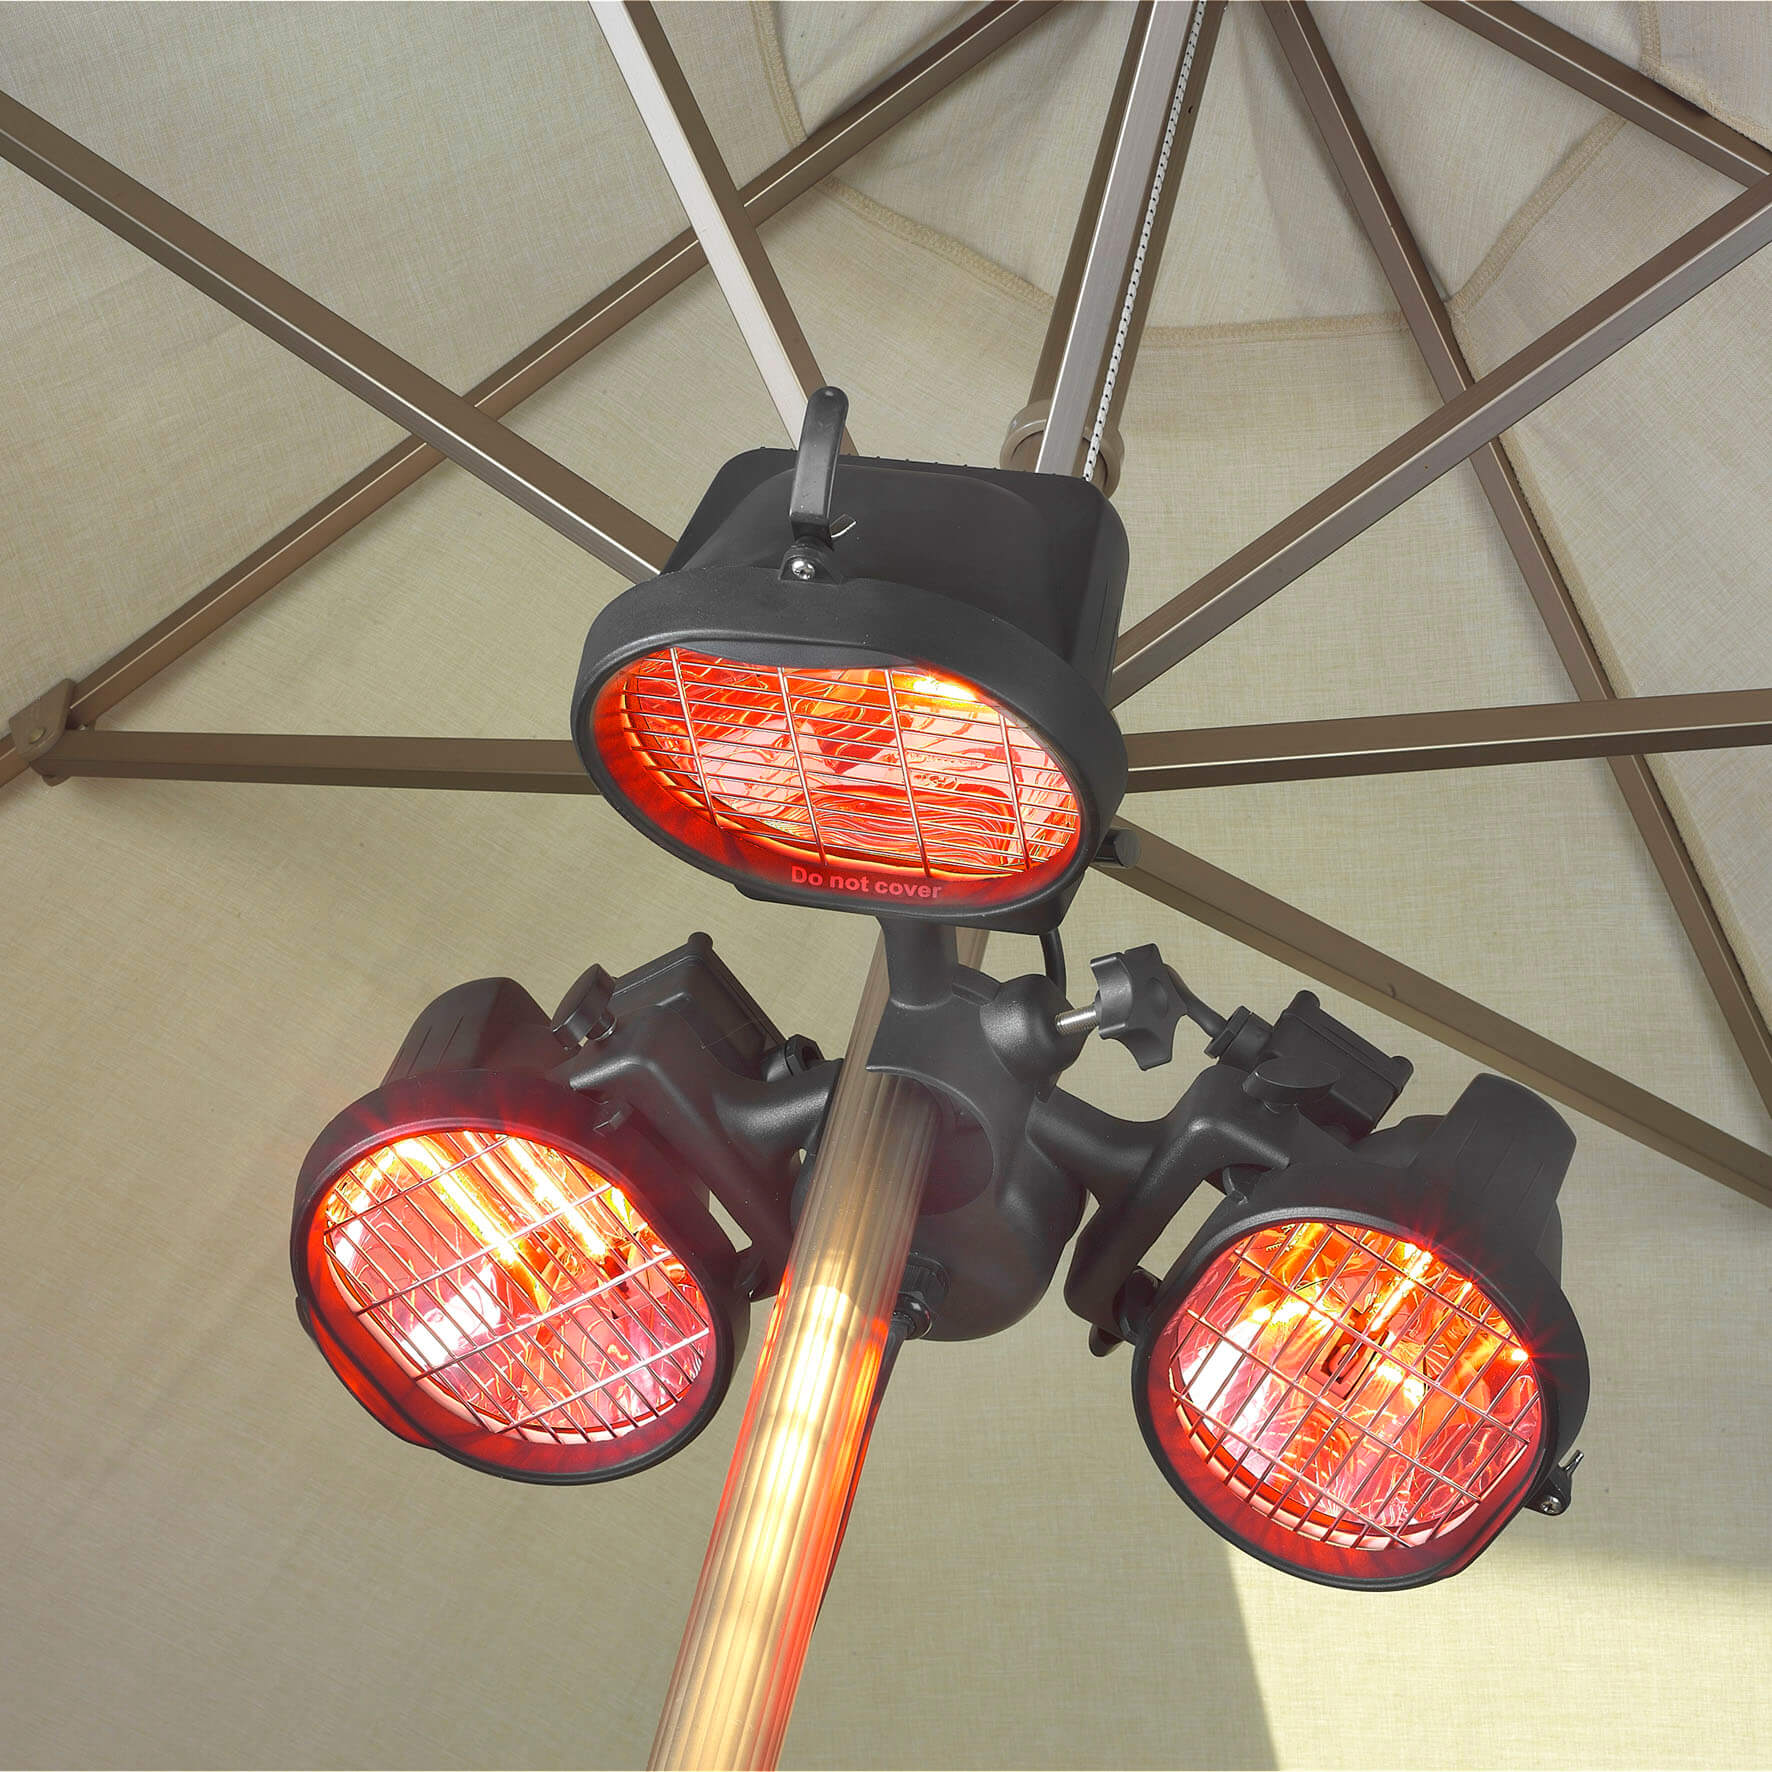 Eurom Parasol heater 1500 - Deze terrasverwarmer is in elke parasol op te hangen en verwarmt zo heerlijk het hele terras